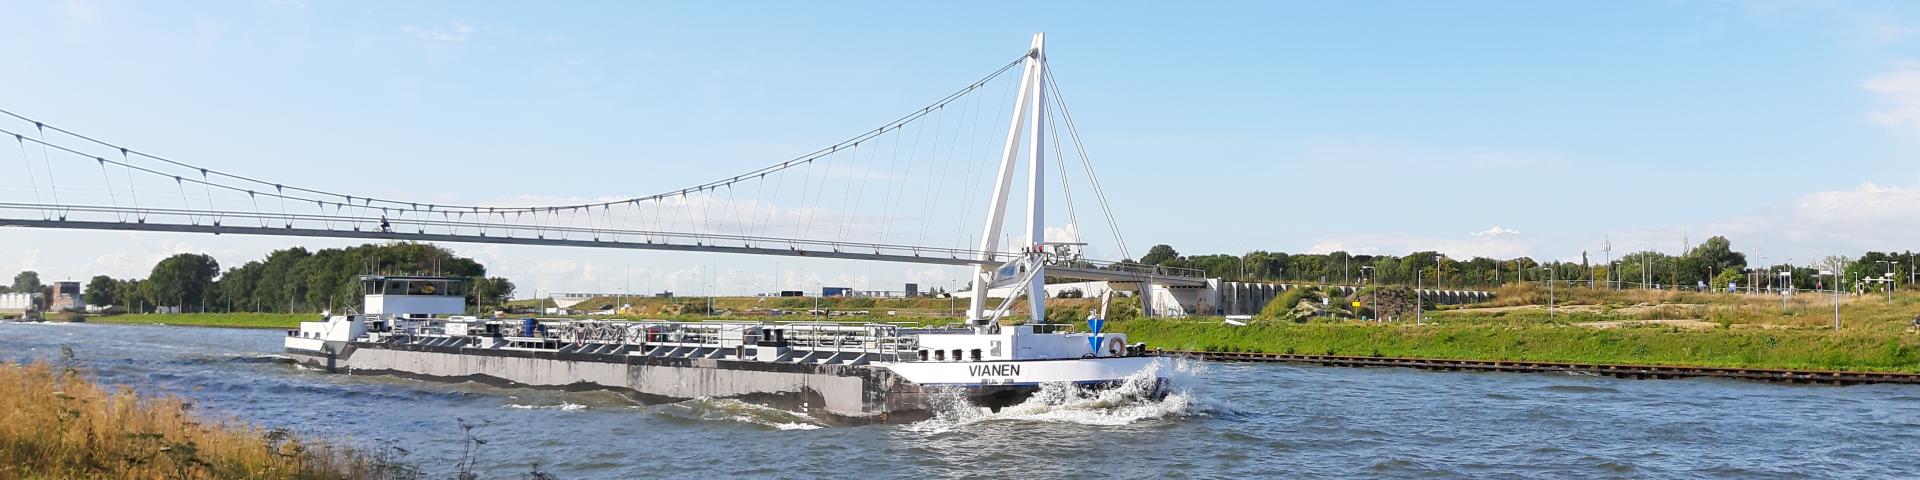 Tanker op Amsterdam Rijnkanaal